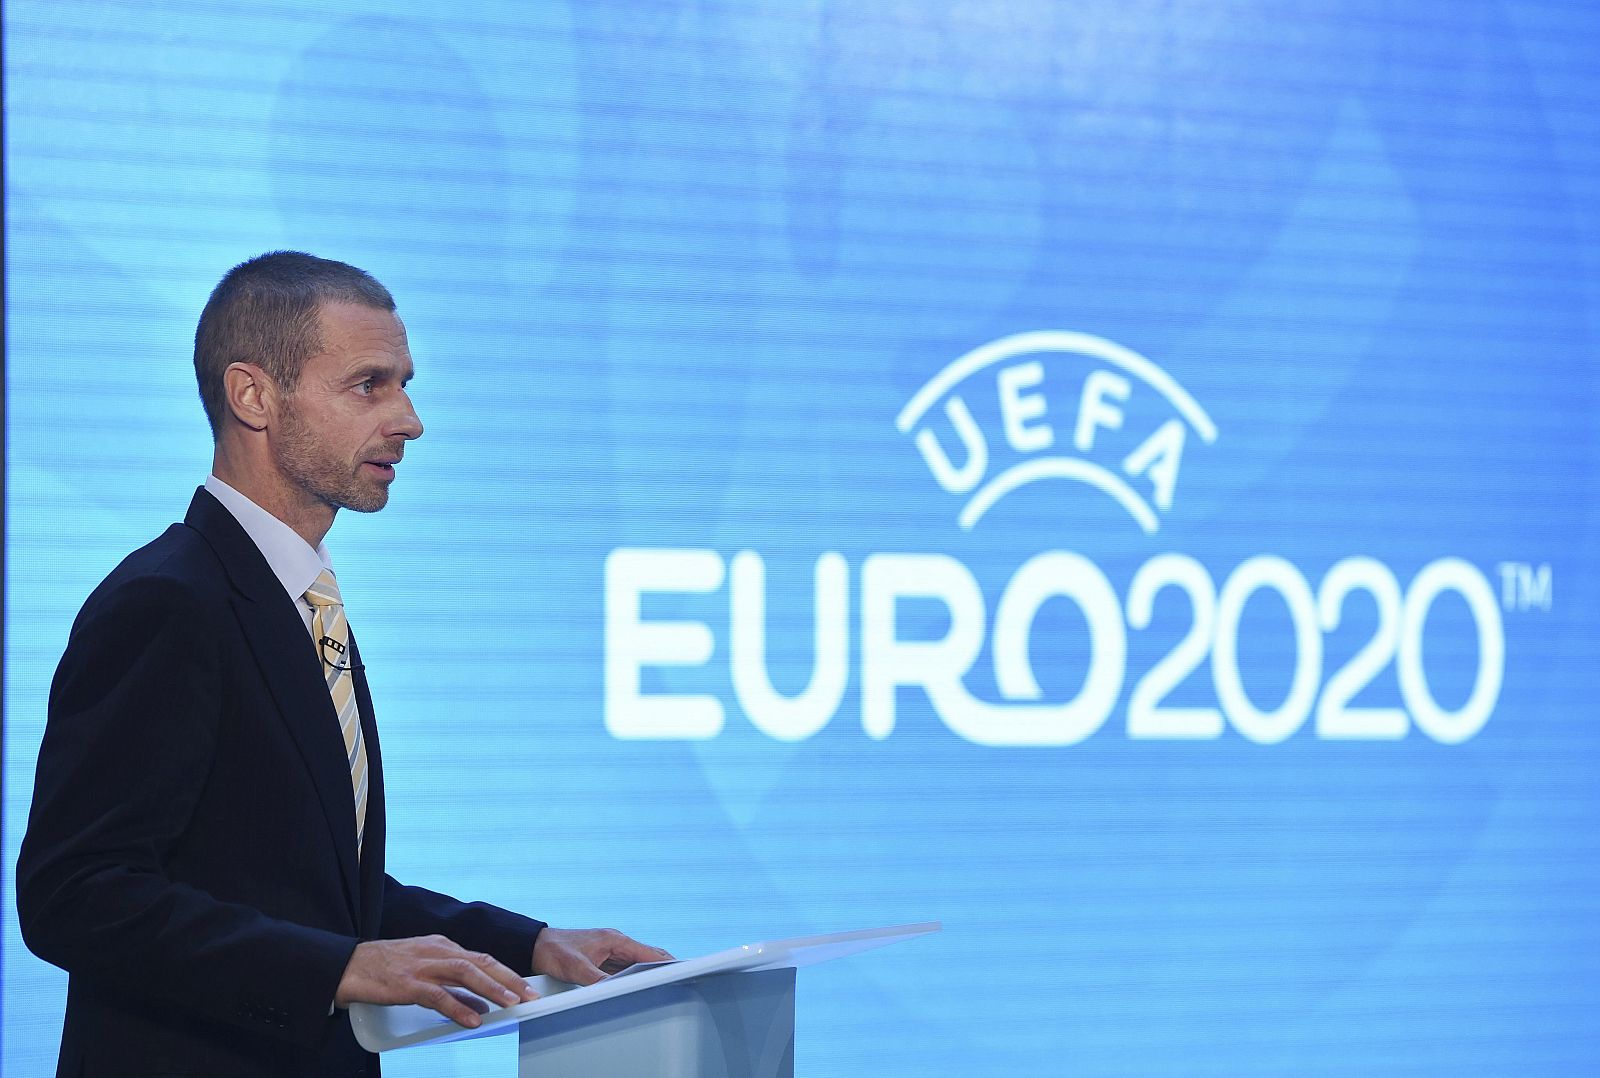 Imagen de archivo del presidente de la UEFA, Aleksander Ceferin, durante la presentación de la imagen corporativa del torneo UEFA EURO 2020.